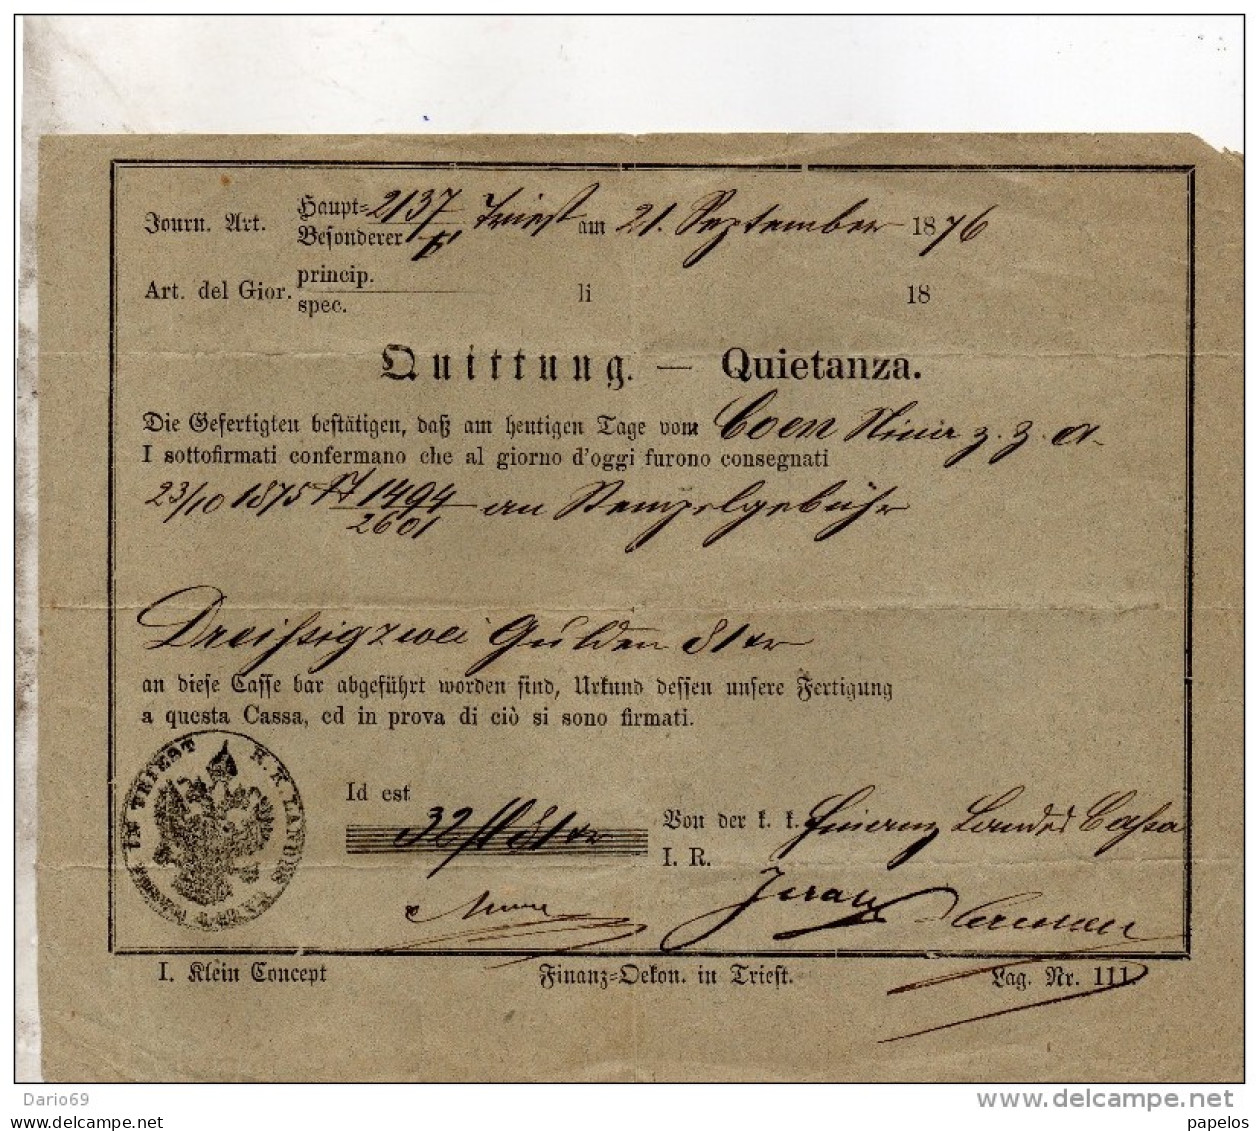 1876 QUIETANZA - Lettres De Change